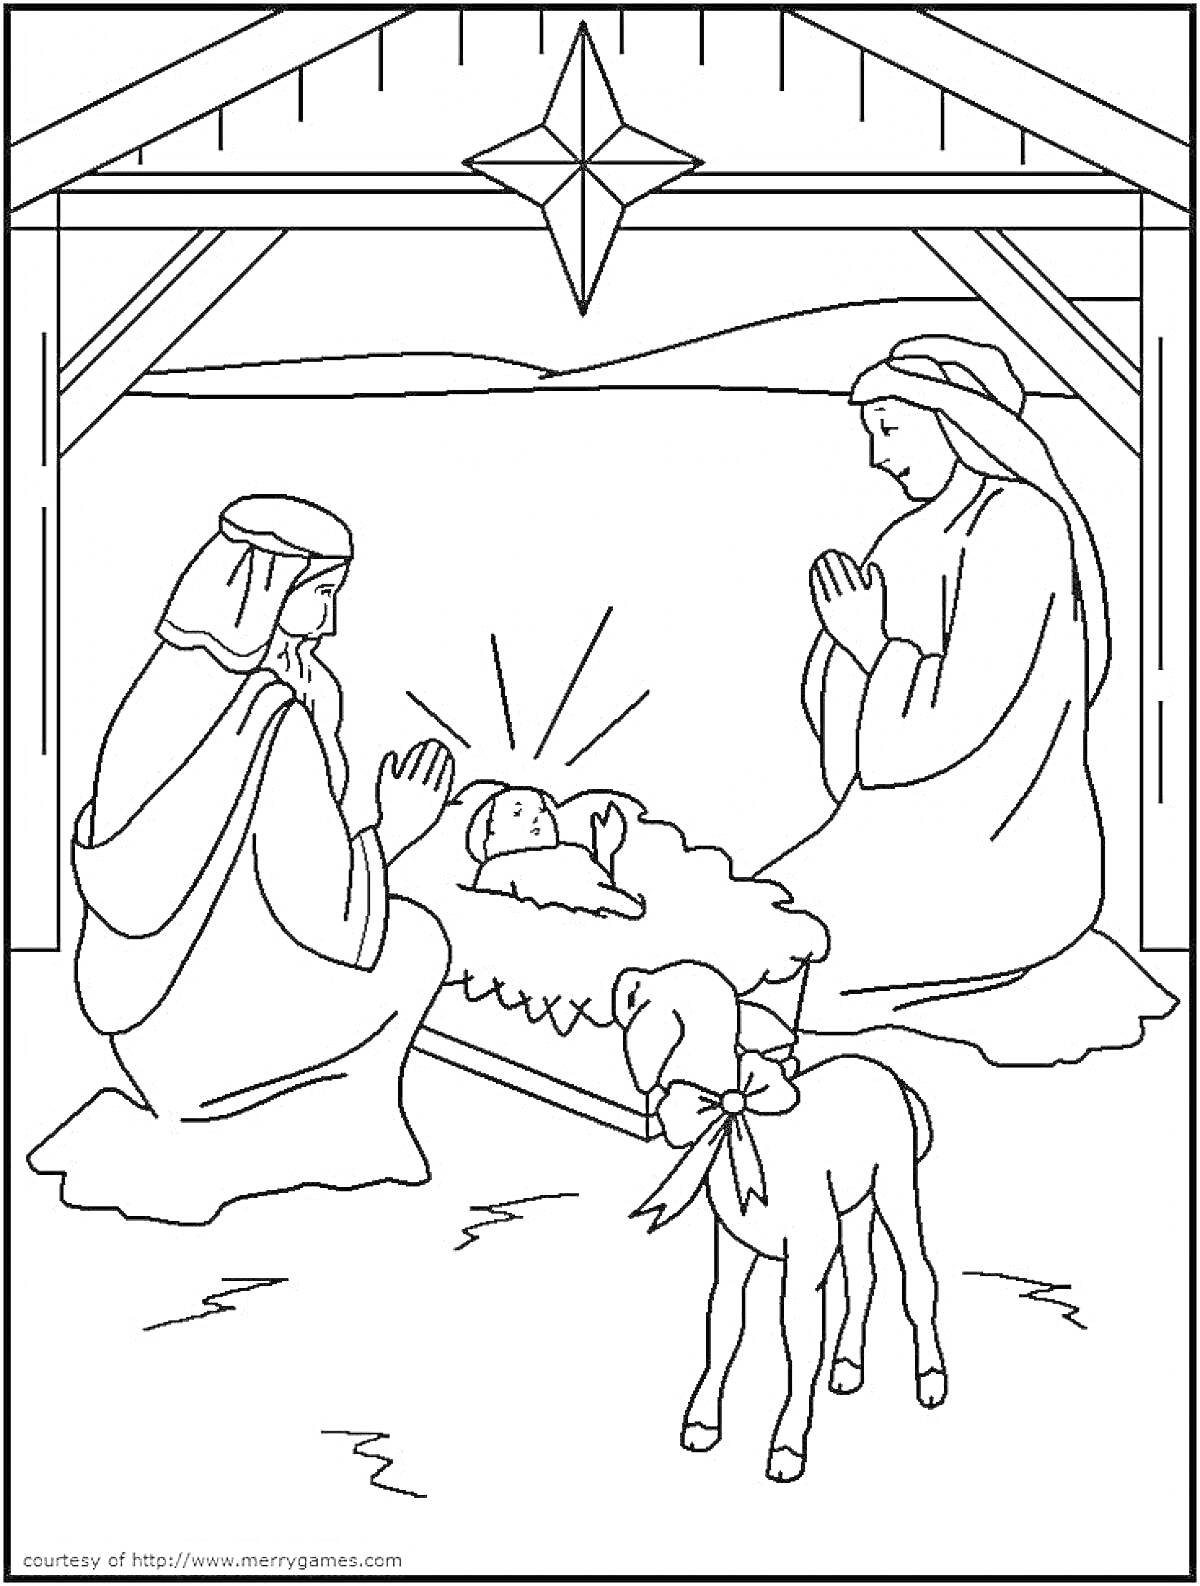 Рождественский вертеп с младенцем Иисусом, Девой Марией, Иосифом и ягненком в хлеву